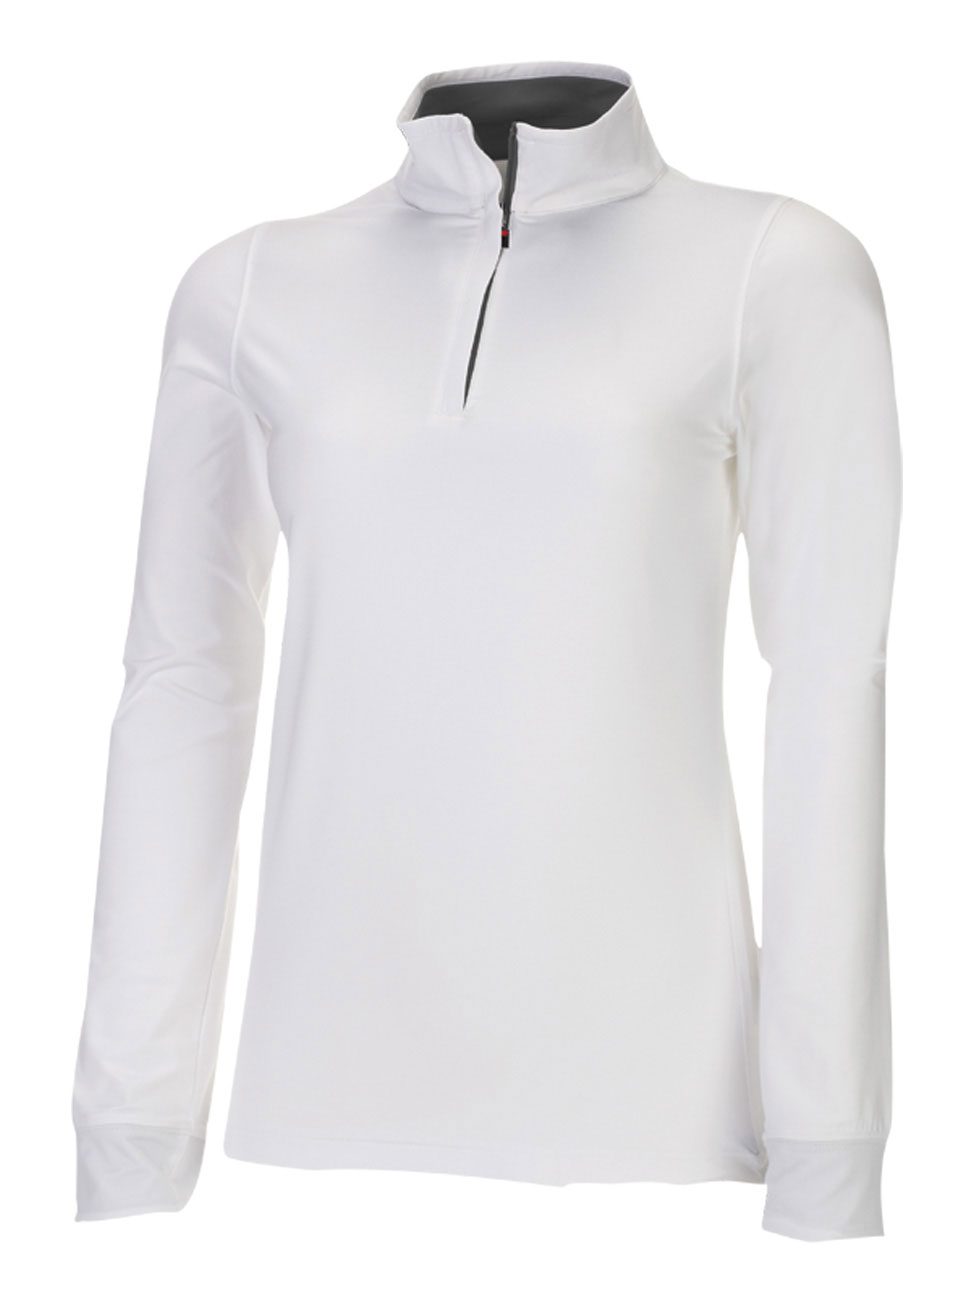 Fila Women's Reno Long Sleeve Sport Shirt #FA6702 White